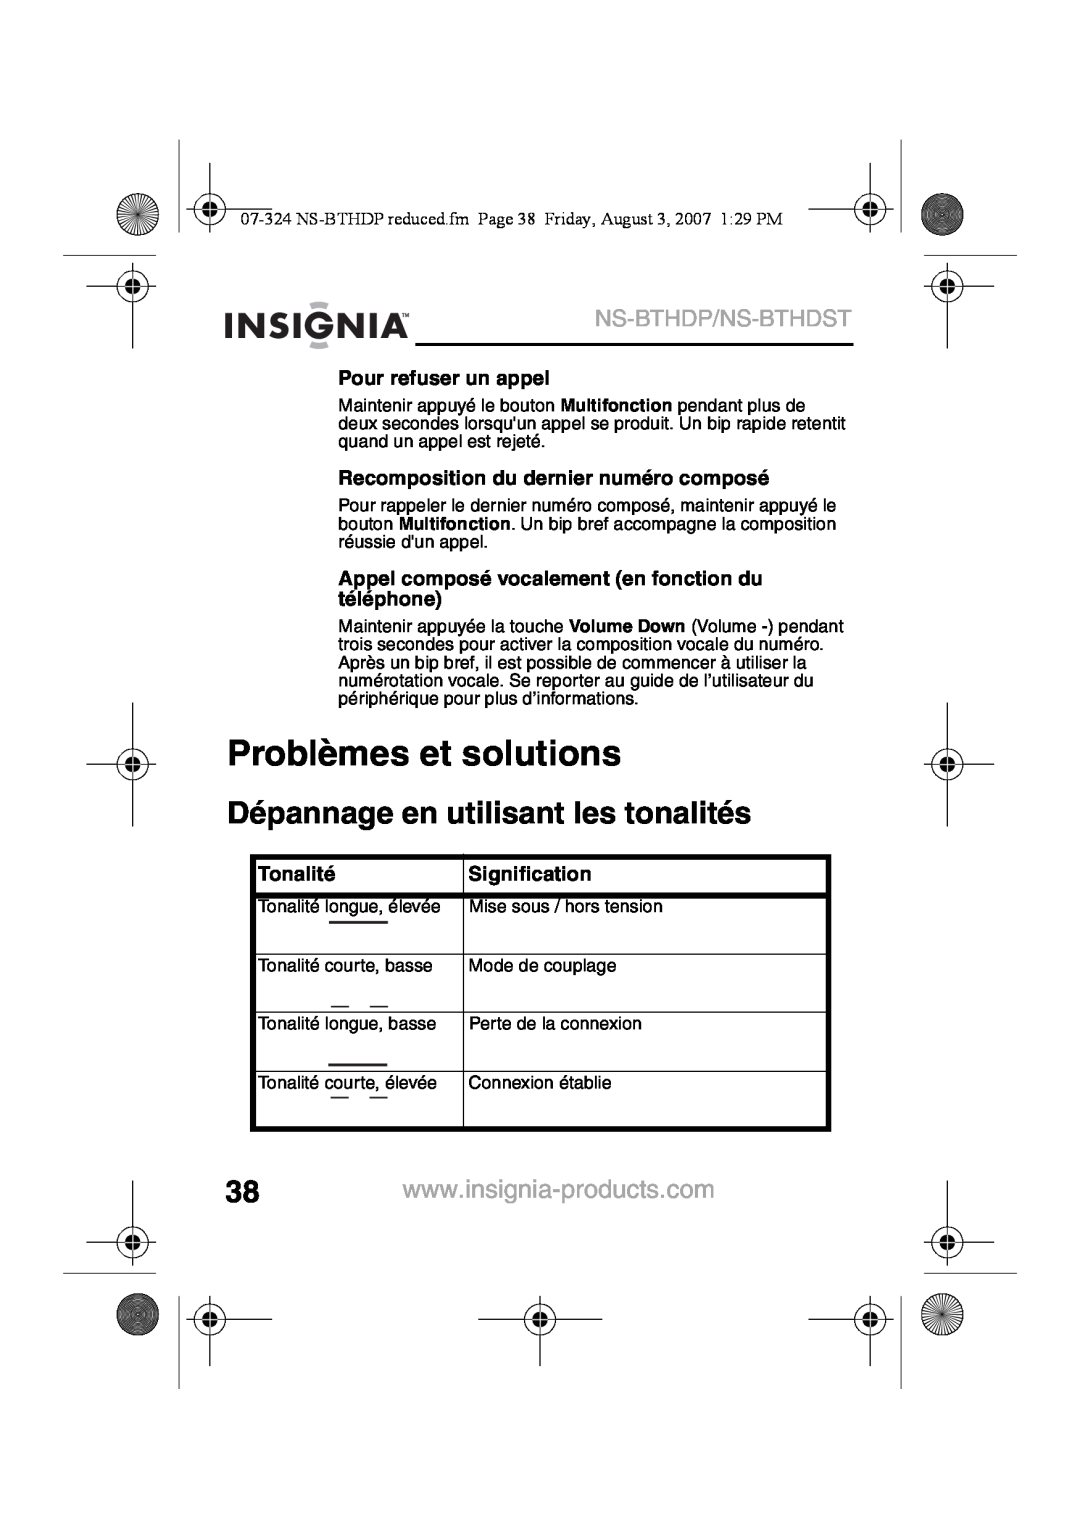 Insignia NS-BTHDST Problèmes et solutions, Dépannage en utilisant les tonalités, Ns-Bthdp/Ns-Bthdst, Pour refuser un appel 